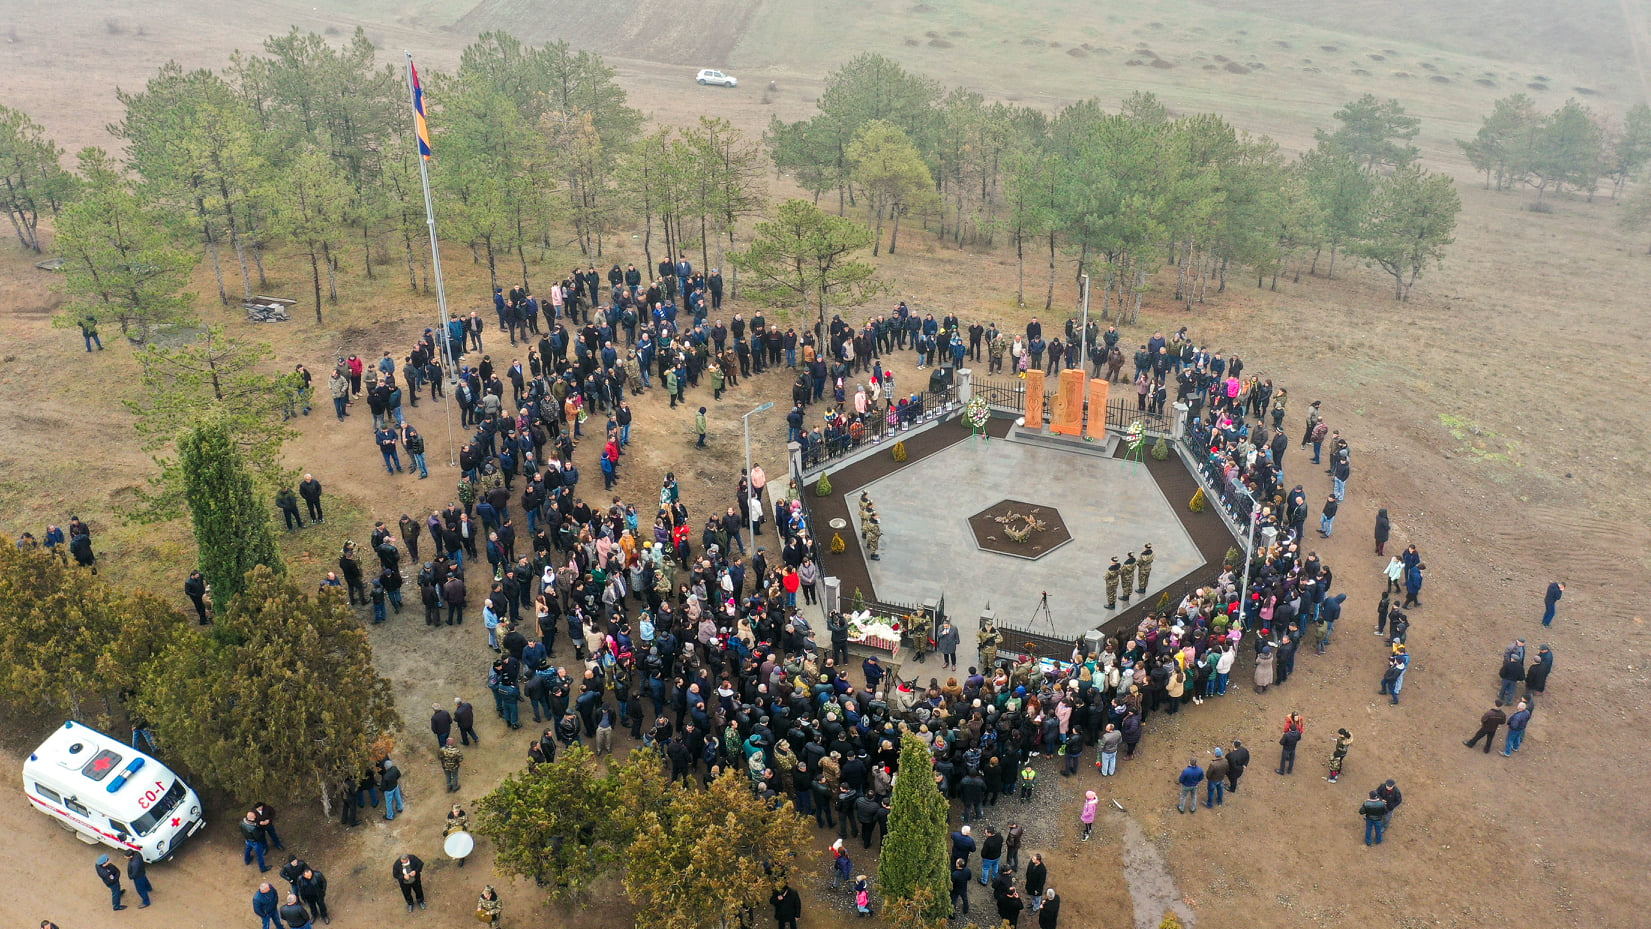 Բերդավանում զոհվածների հիշատակին նվիրված հուշահամալիրը է բացվել